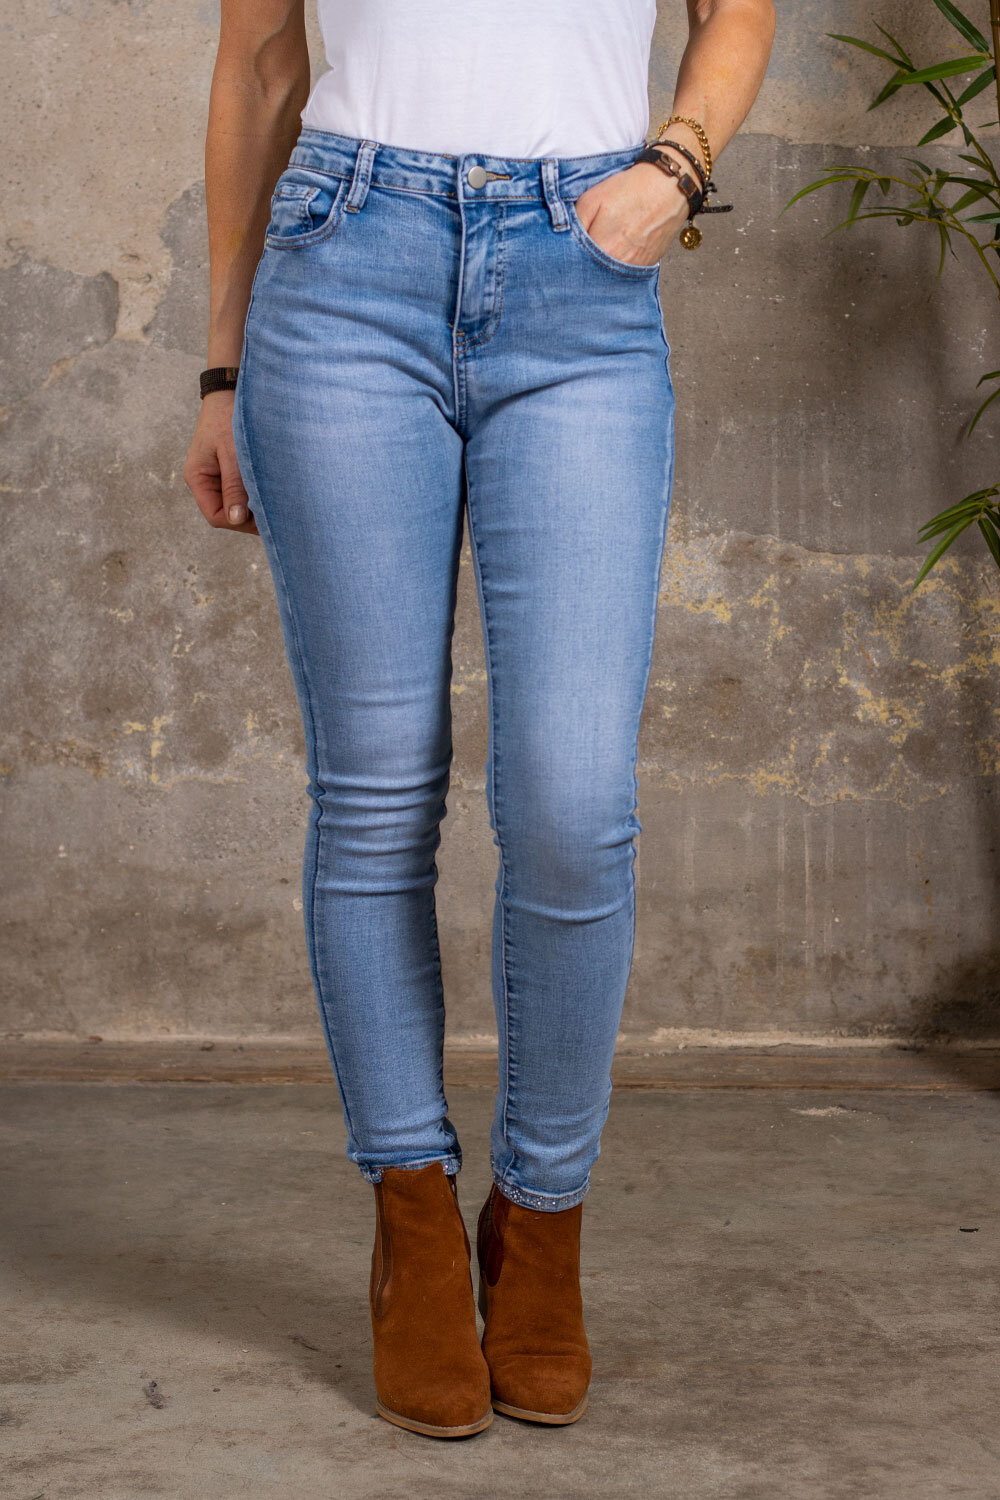 Skinny Jeans RD7182 - Bling fjäril - Ljustvätt